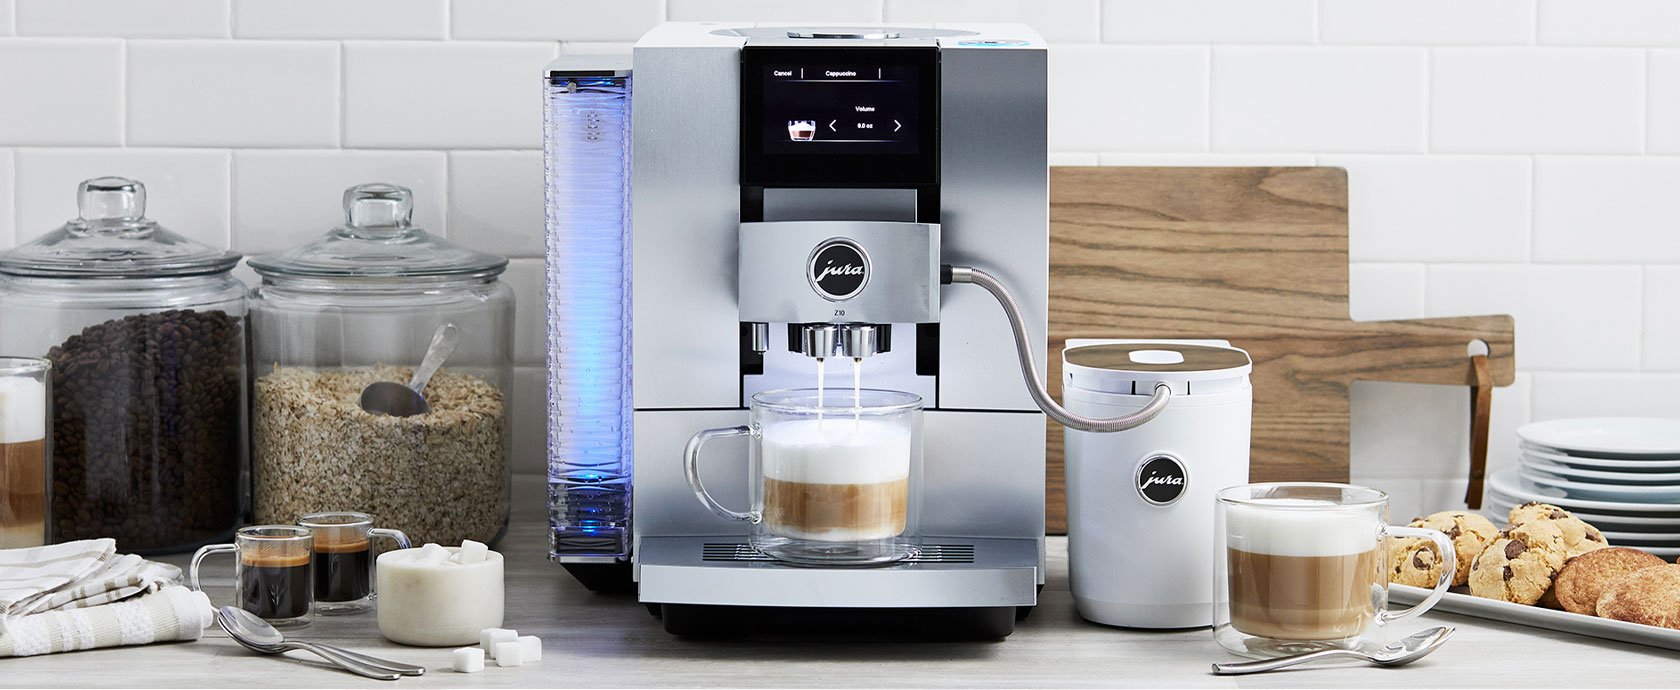 Jura Z10 stainless steel coffee and espresso machine